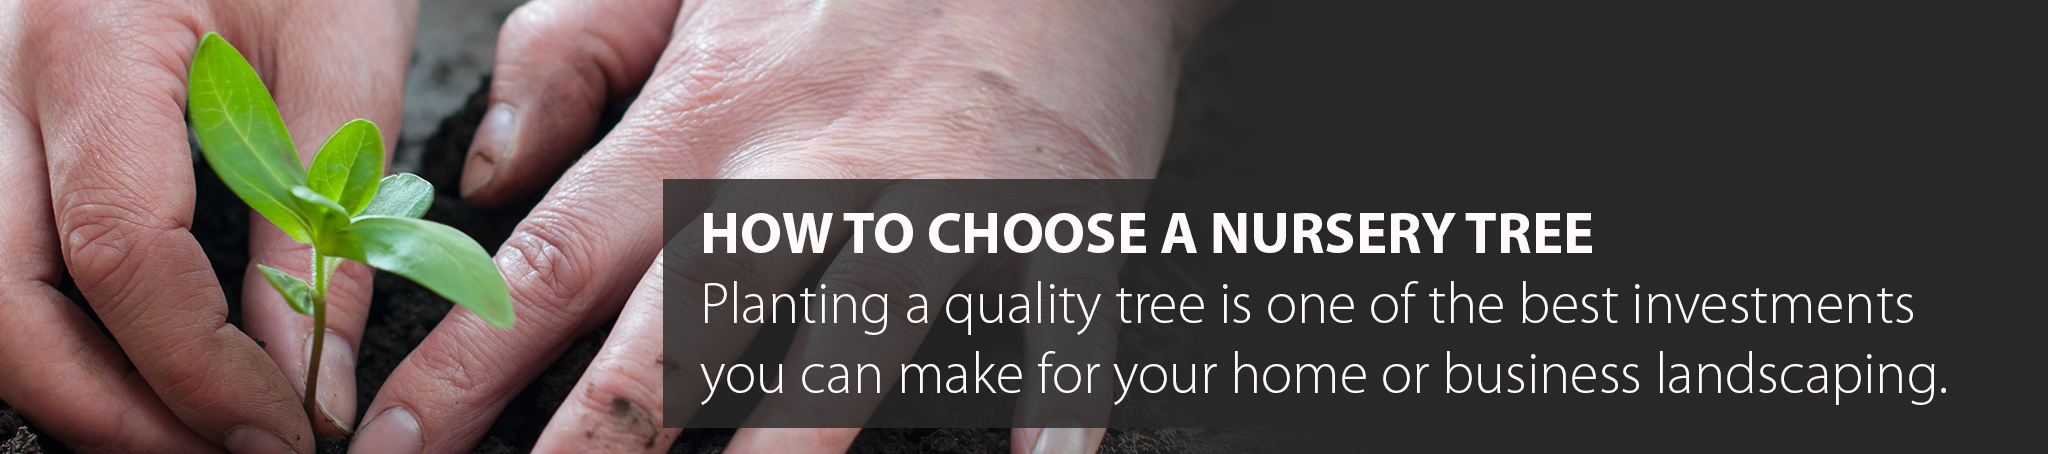 choosing a tree from a nursery